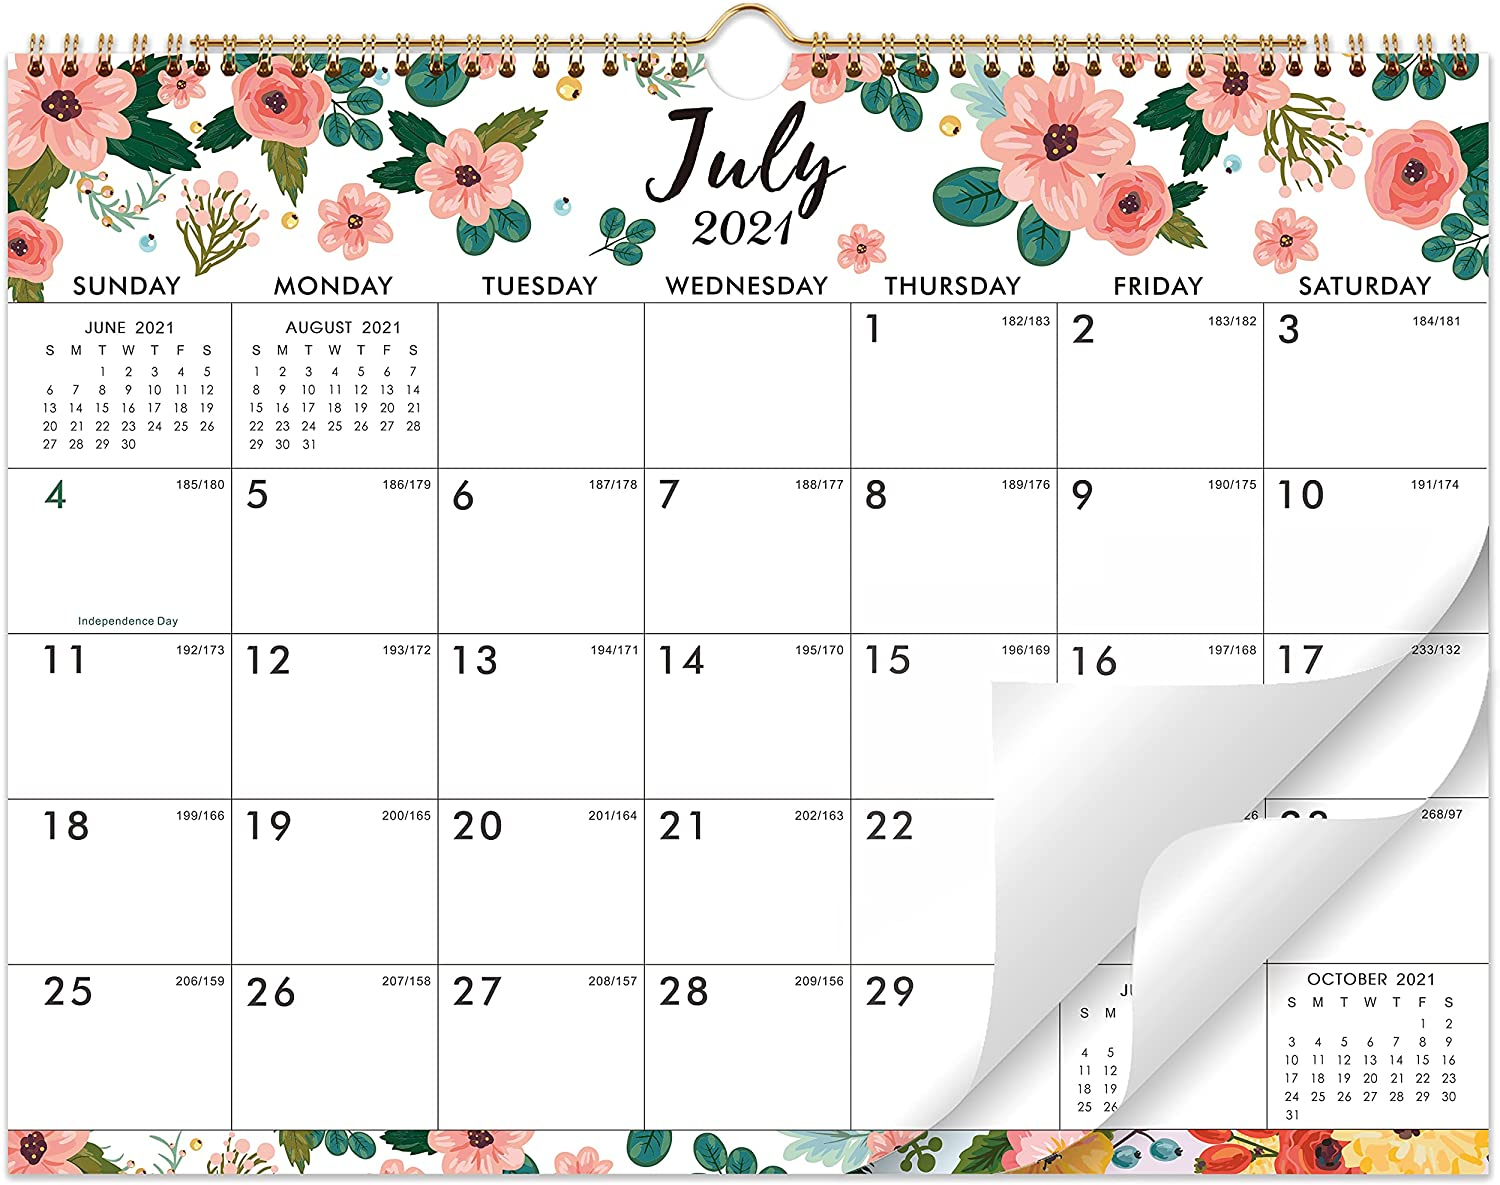 2021-2022 Calendar - Wall Calendar Planner From Jul 2021